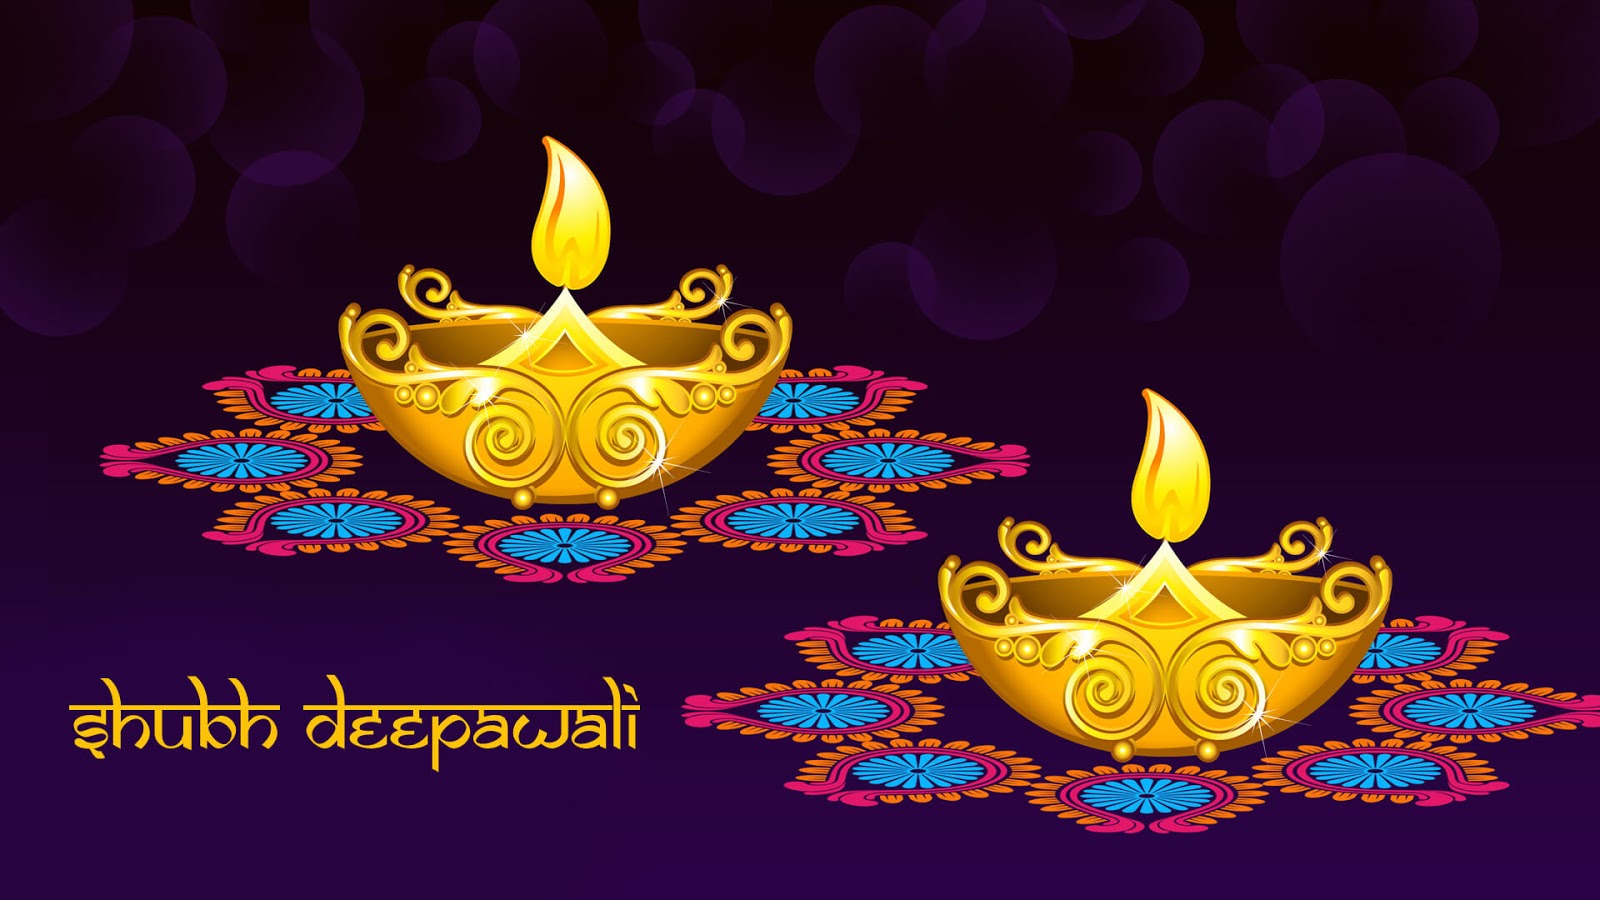 50 Beautiful Diwali Wallpapers For Your Desktop Mobile - Shubh Dipawali -  1600x900 Wallpaper 